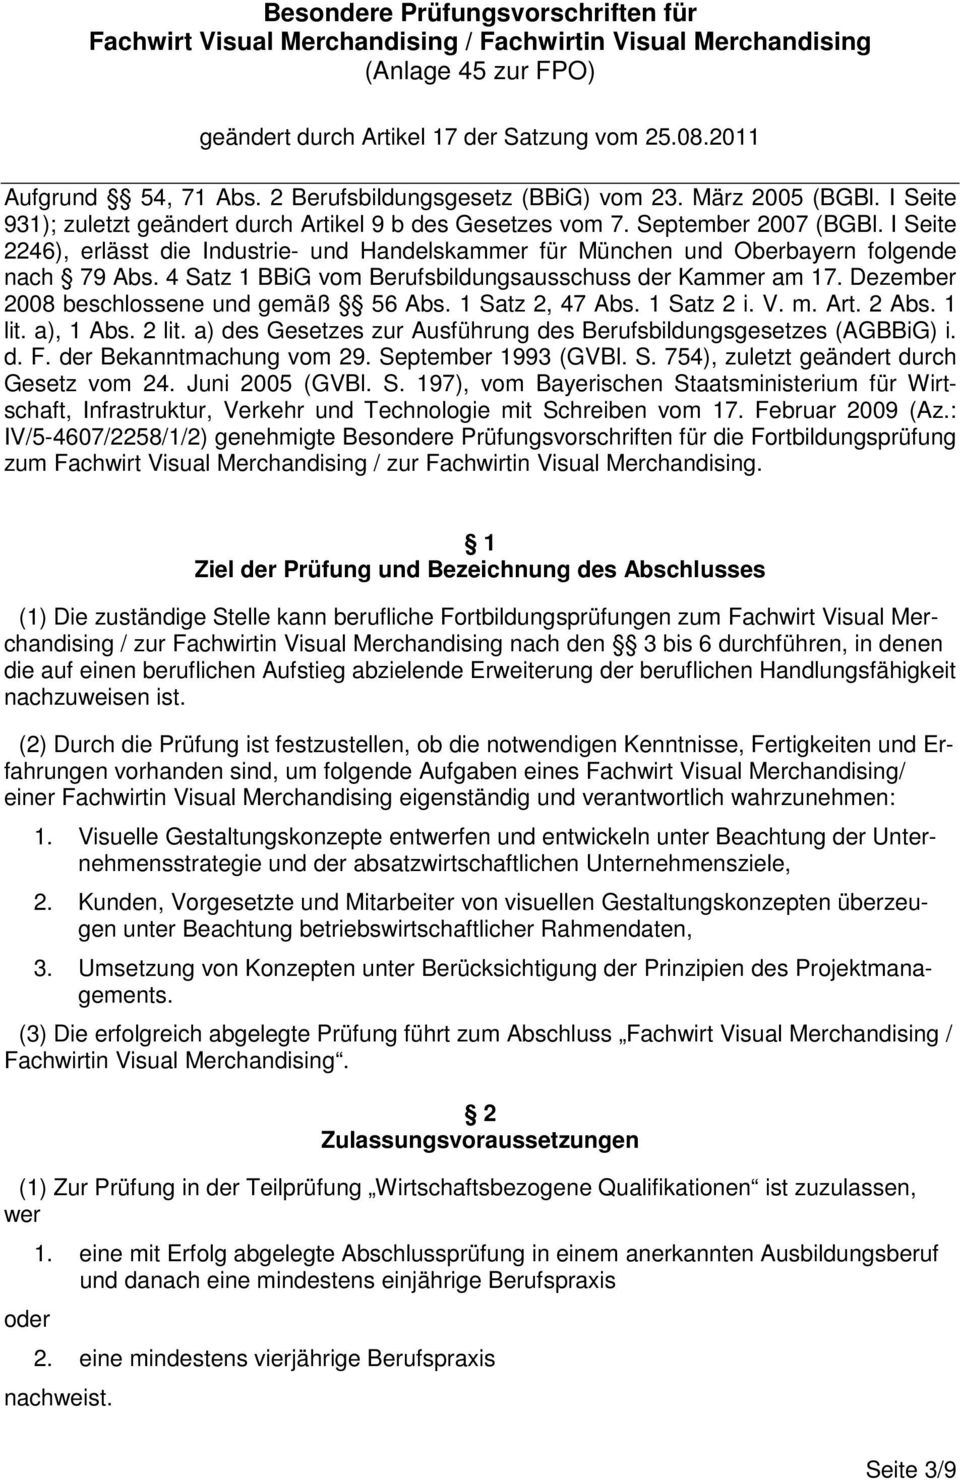 I Seite 2246), erlässt die Industrie- und Handelskammer für München und Oberbayern folgende nach 79 Abs. 4 Satz 1 BBiG vom Berufsbildungsausschuss der Kammer am 17.